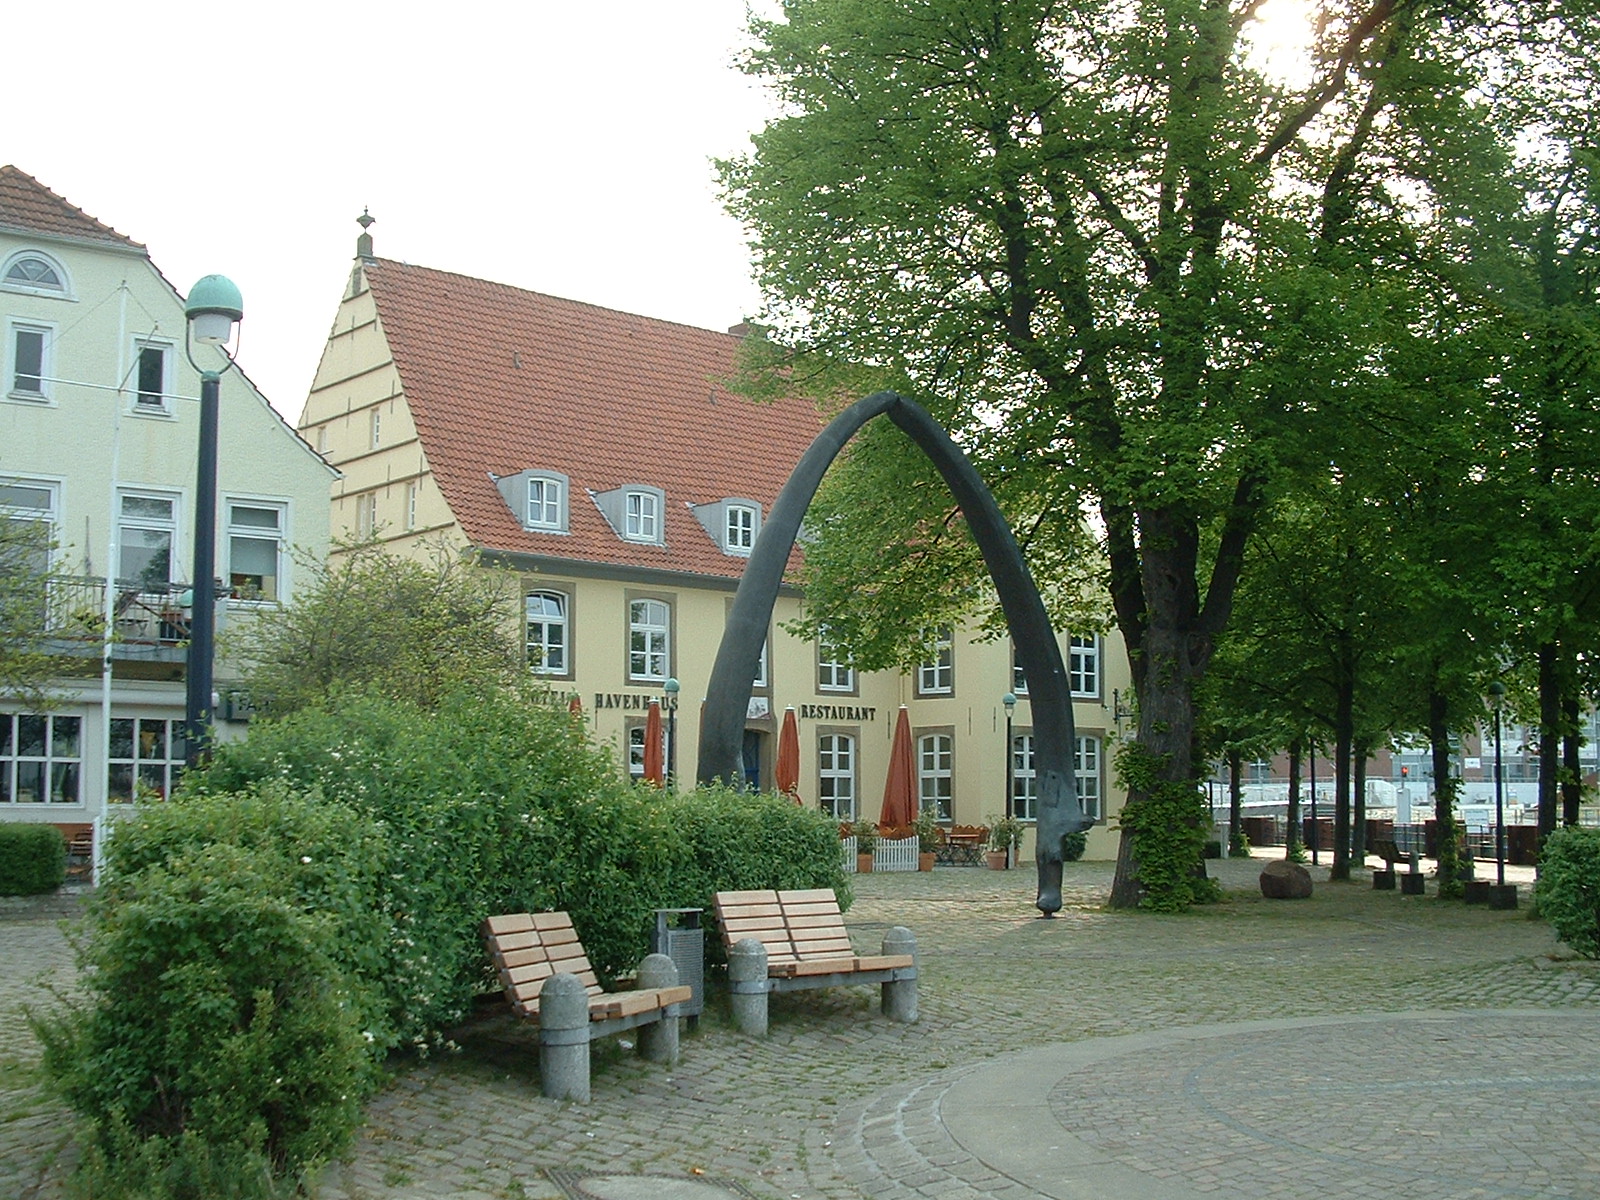 Havenhaus Hotel und Restaurant in Vegesack - hinter dem Walkiefer